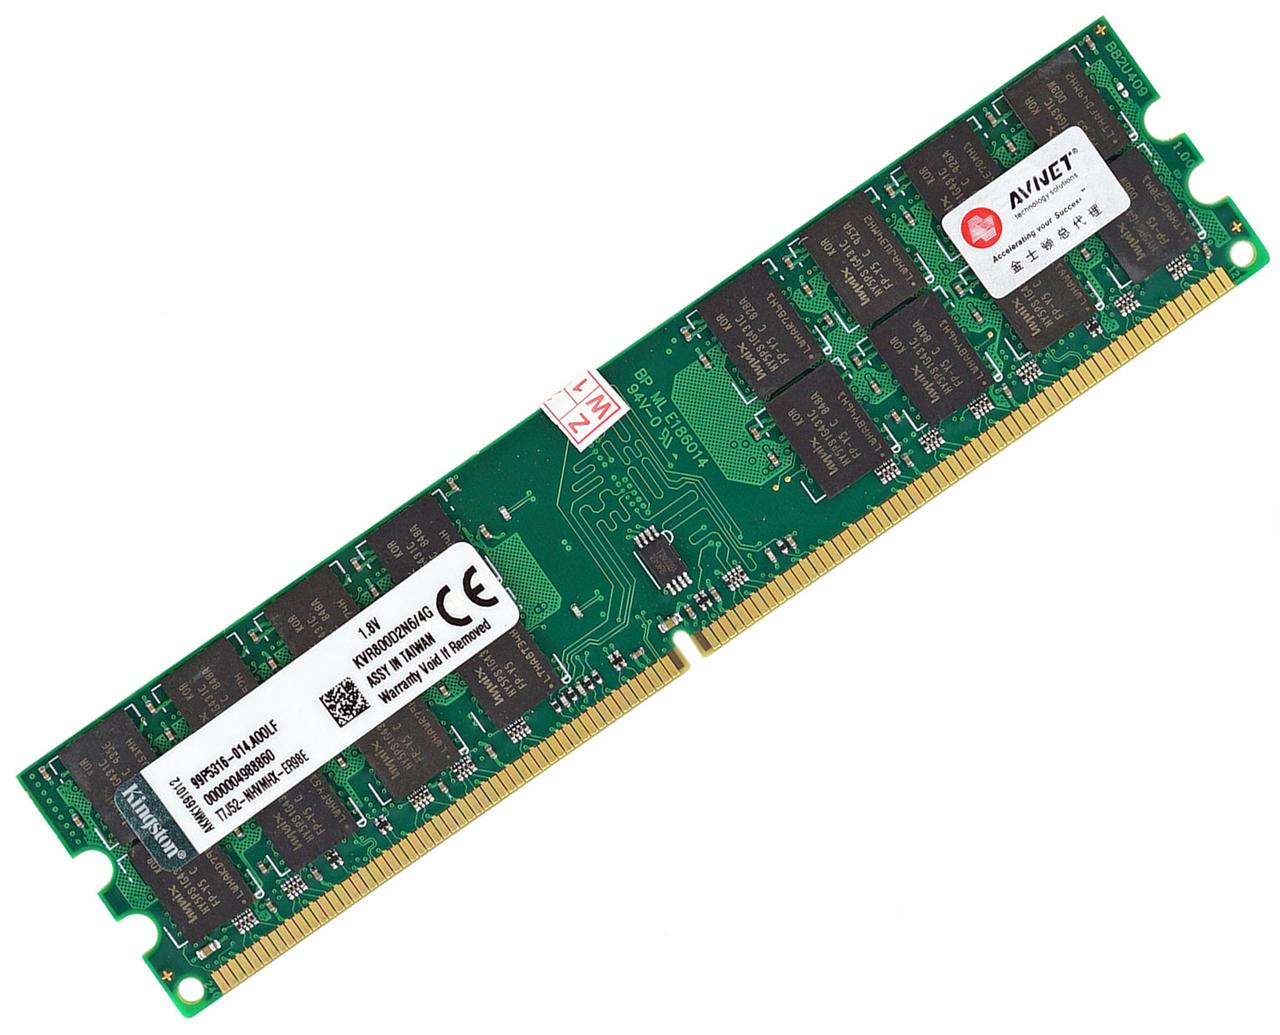 Оперативна пам'ять DDR2 4Gb 800MHz AMD (KVR800D2N6/4G) — ОЗУ ДДР2 4 Гб для АМД 4096MB PC2-6400, фото 1